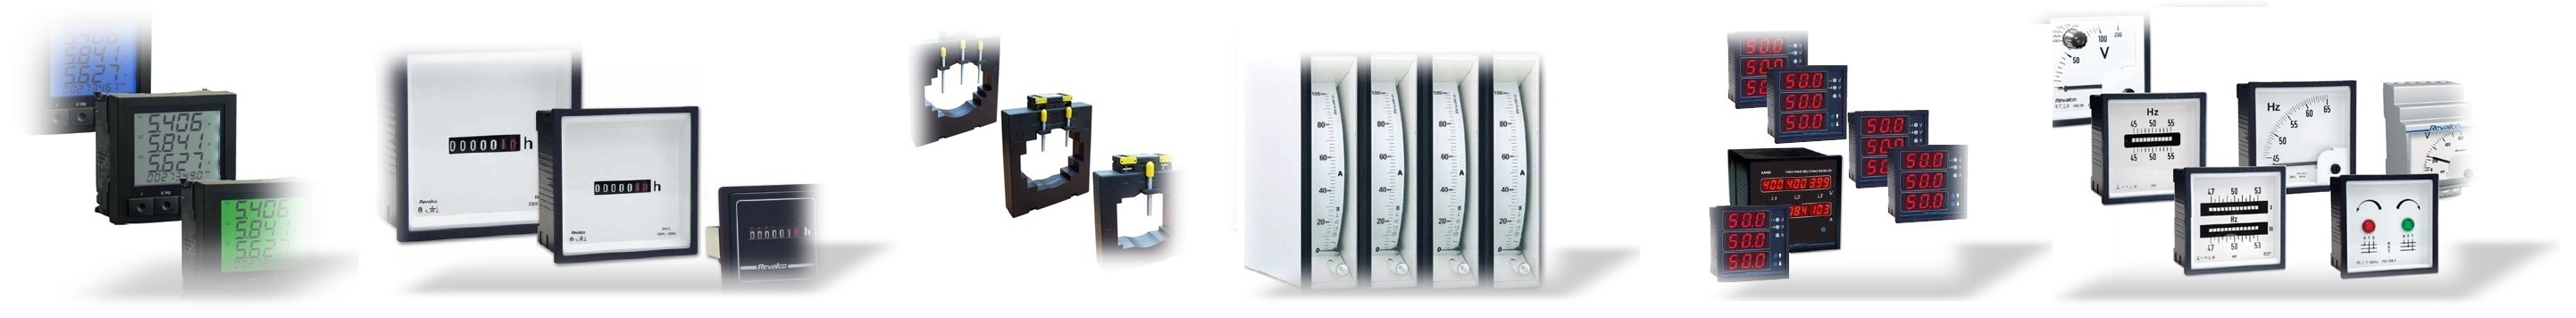 analoge Strommesser, digitale Voltmeter, Betriebsstundenzähler, Messumformer, Stromwandler